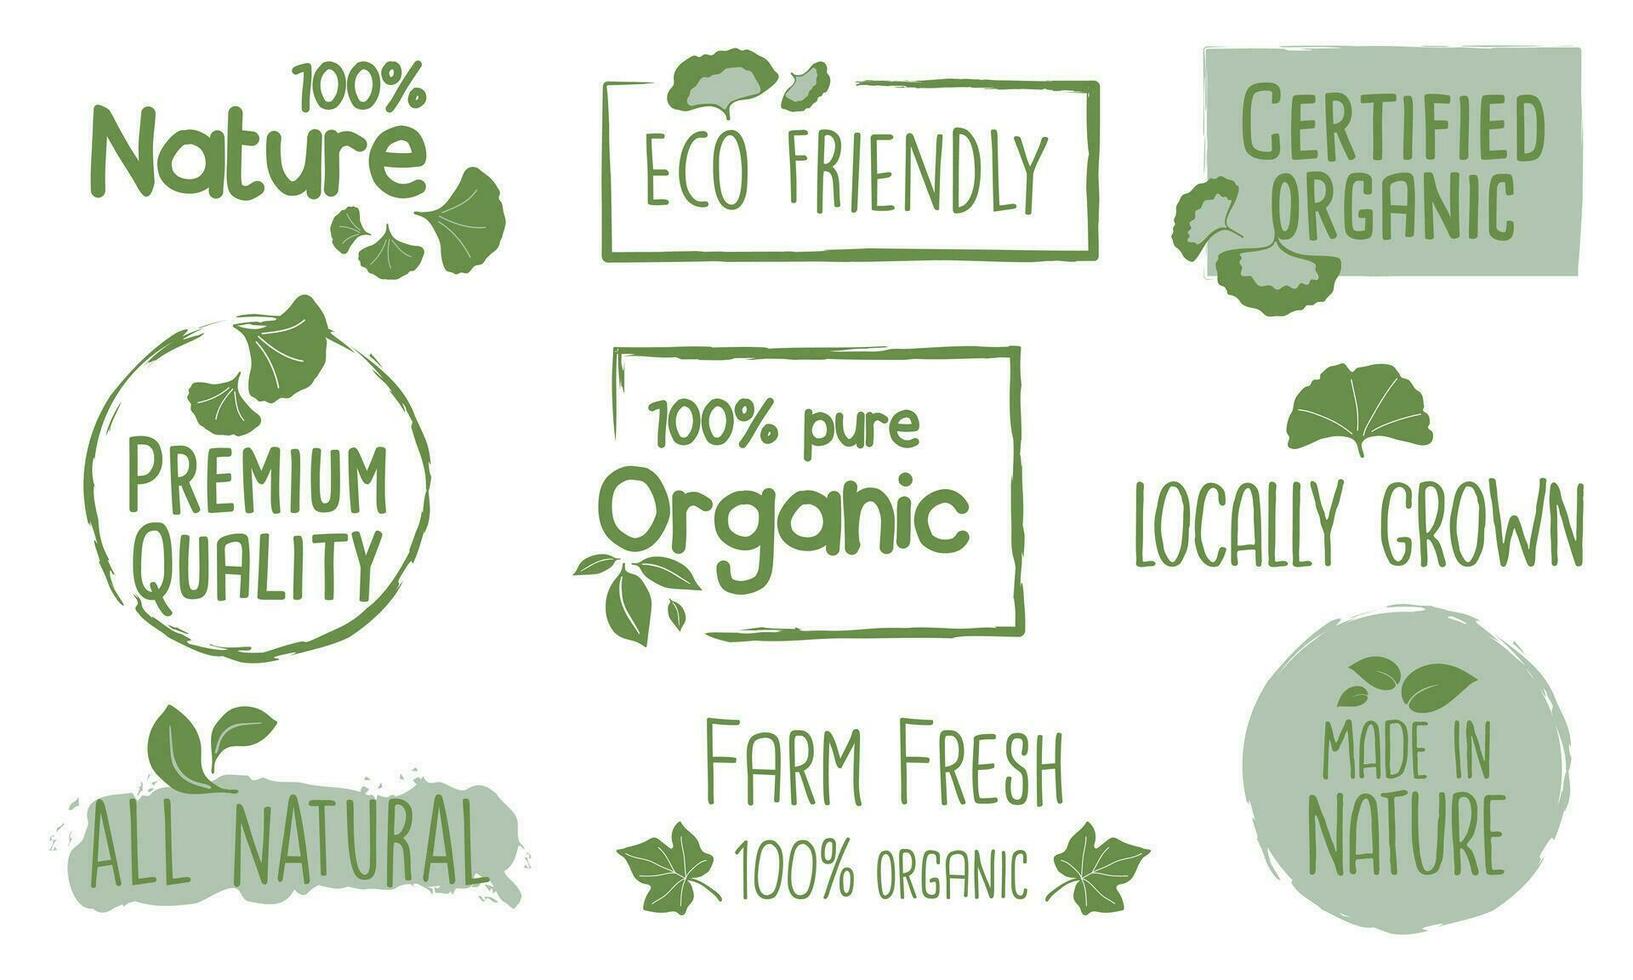 biologique nourriture, en bonne santé la vie et Naturel produit Étiquettes et badges pour nourriture marché, commerce électronique, biologique des produits promotion. vecteur